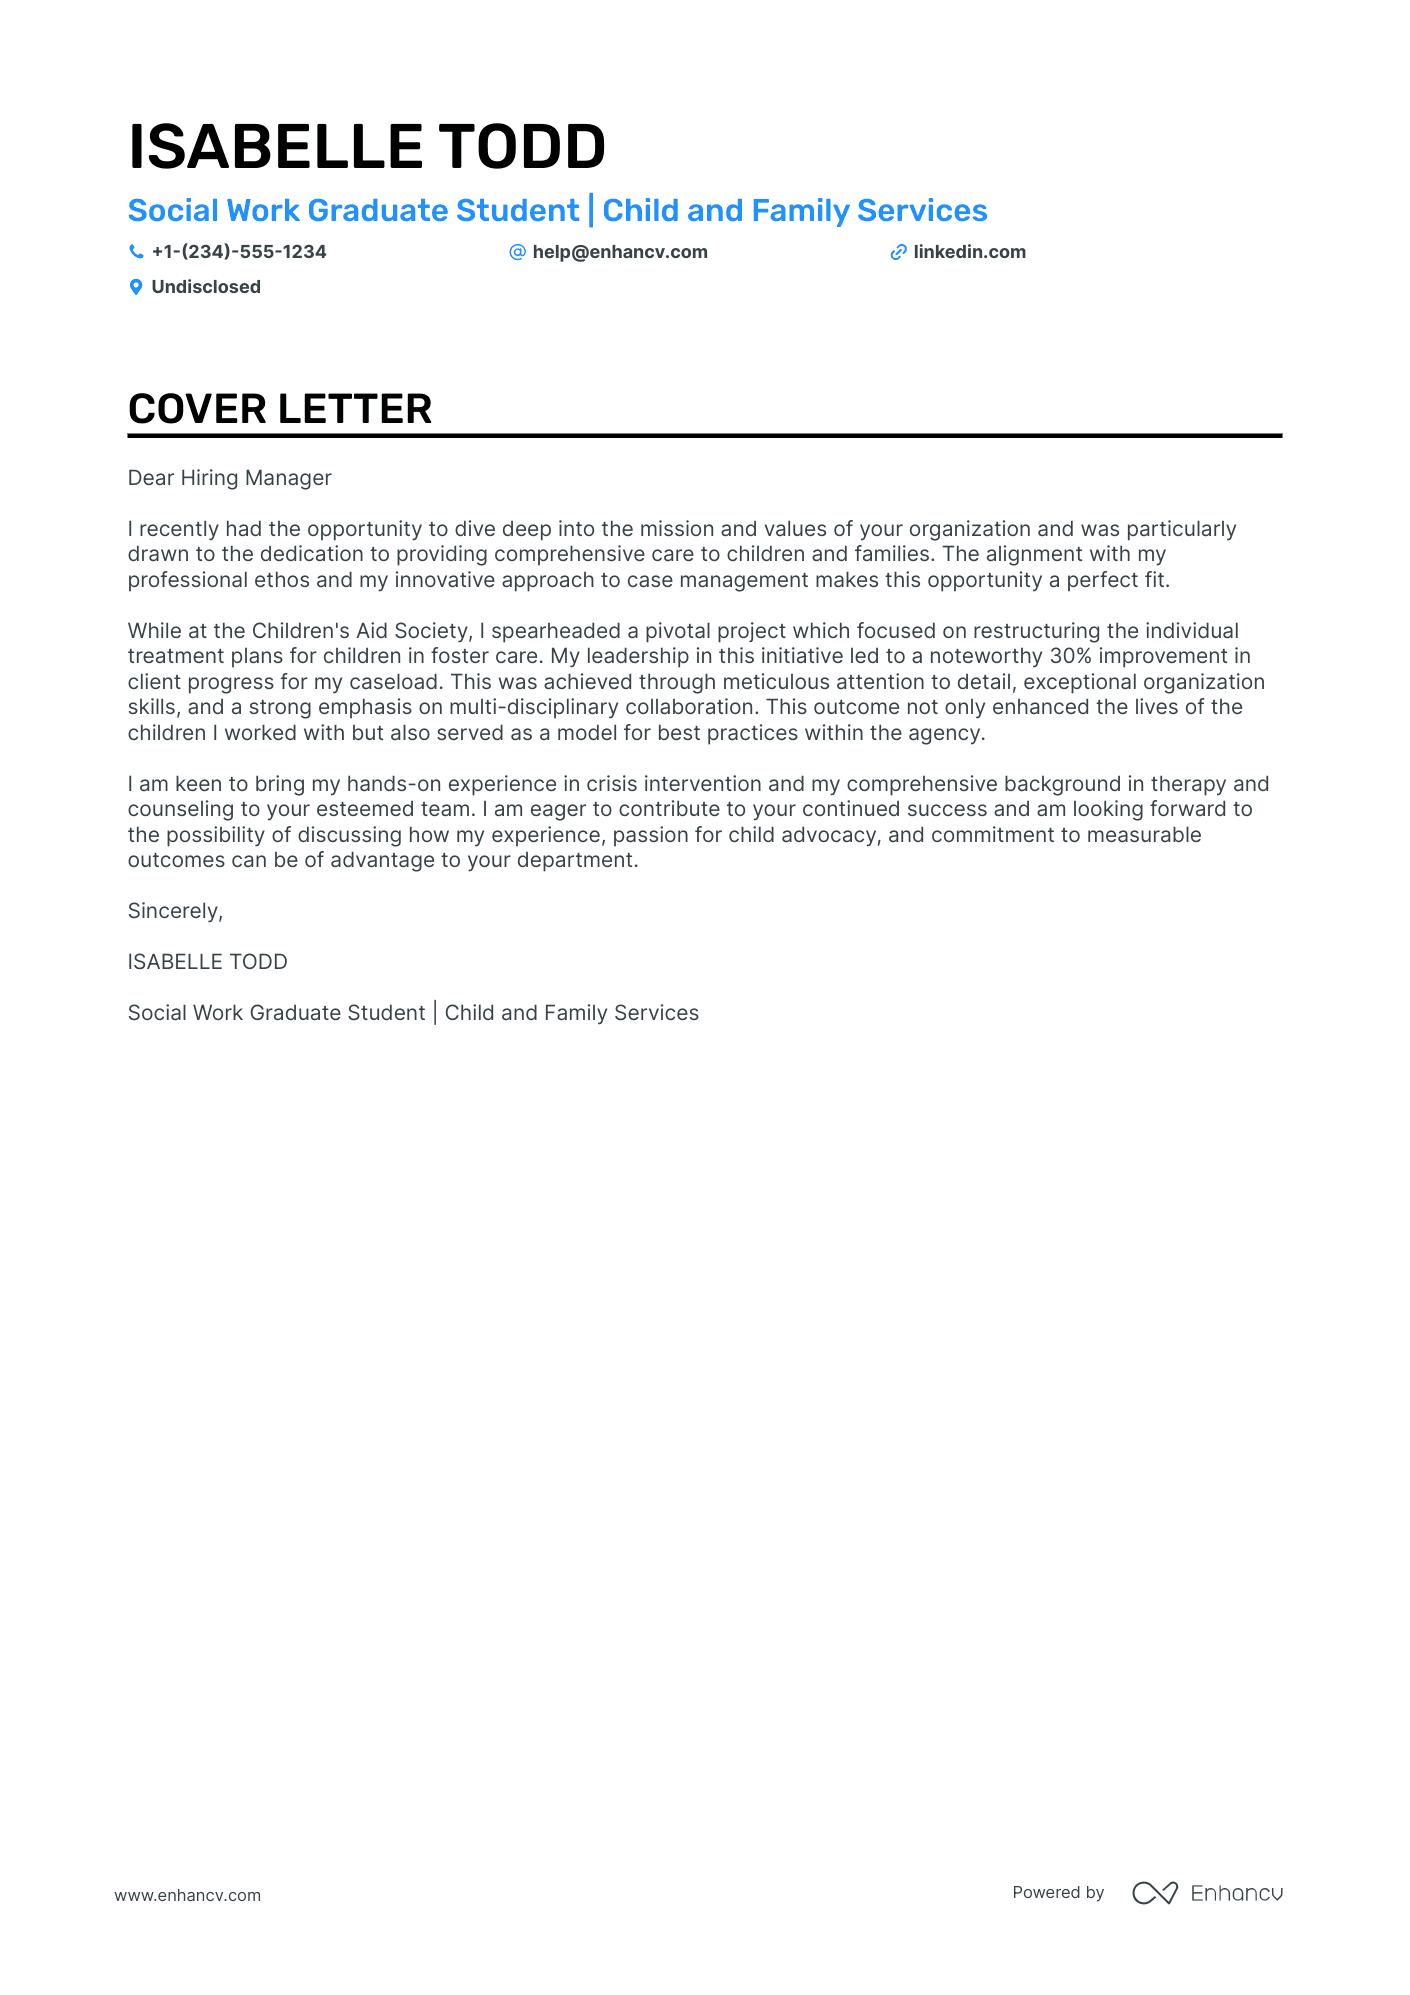 Social Work Student cover letter